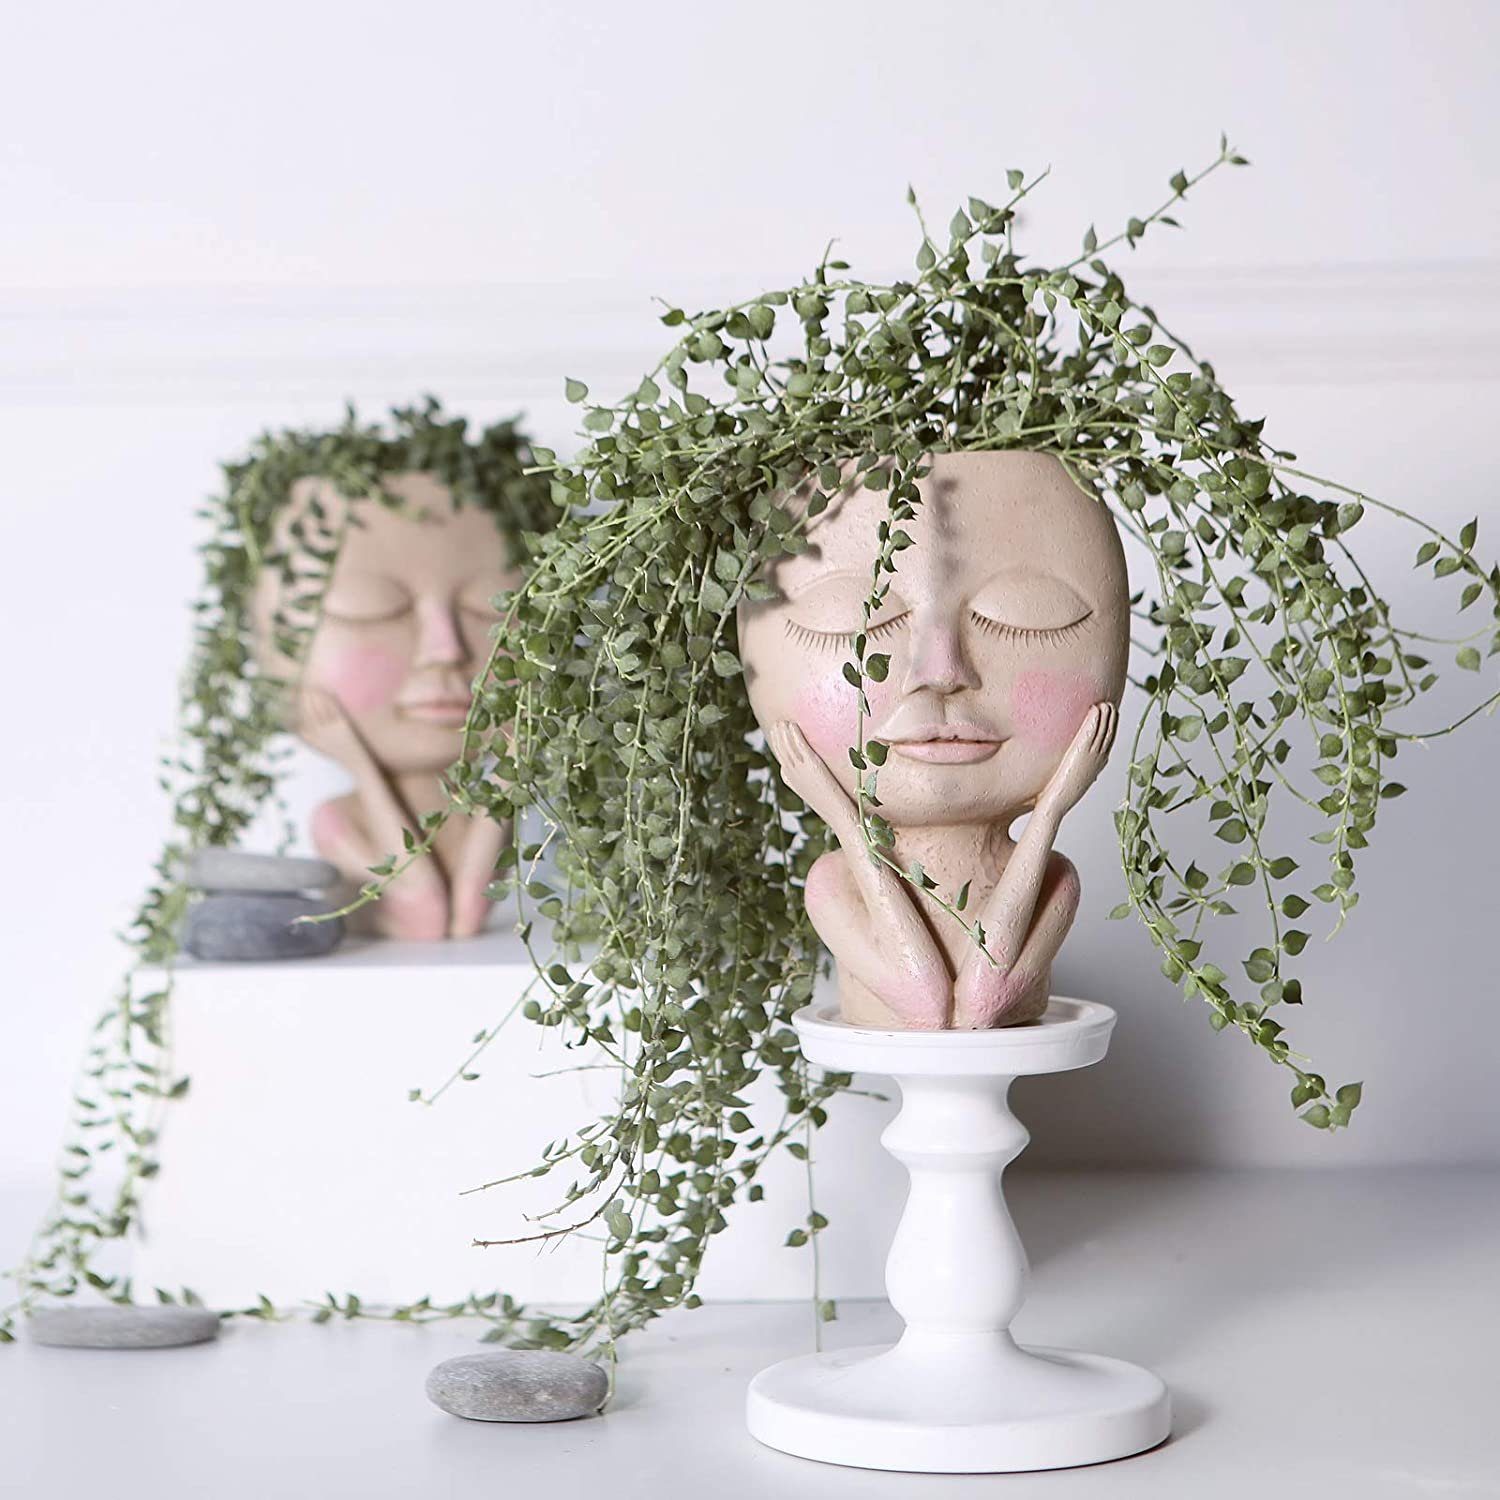 Kopf Hole, Blumentopf mit Kopf Blumentöpfe Vase Gesicht,Menschlicher Drainage Design,Blumentöpfe Menschlicher mit menschlicher Gesicht Design Gesicht,kreative XDeer